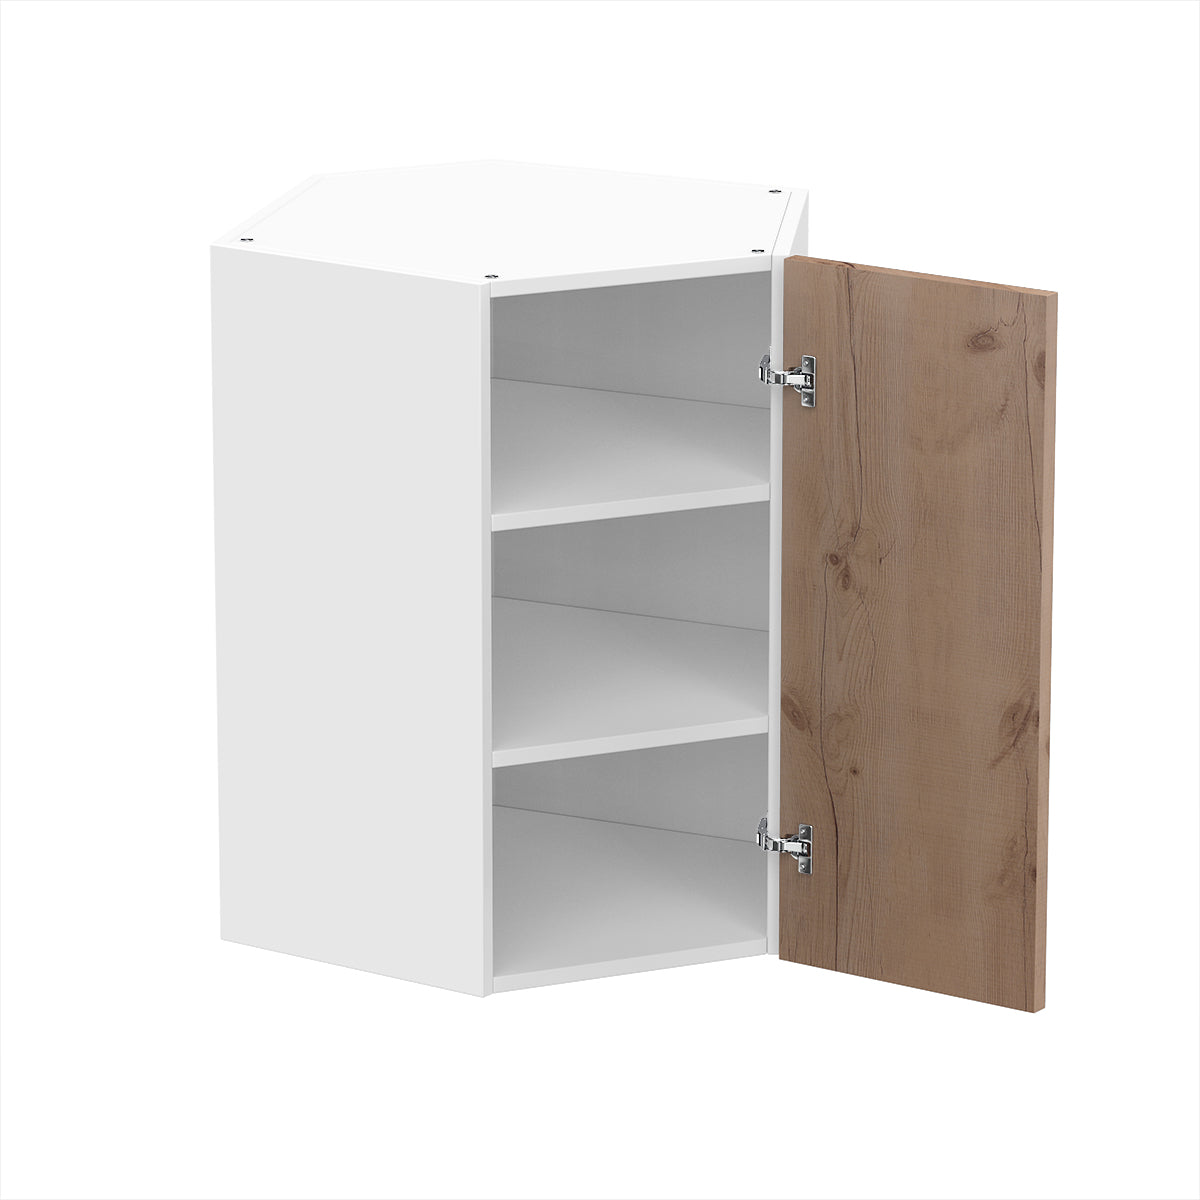 RTA - Rustic Oak - Diagonal Wall Cabinets | 24"W x 30"H x 12"D